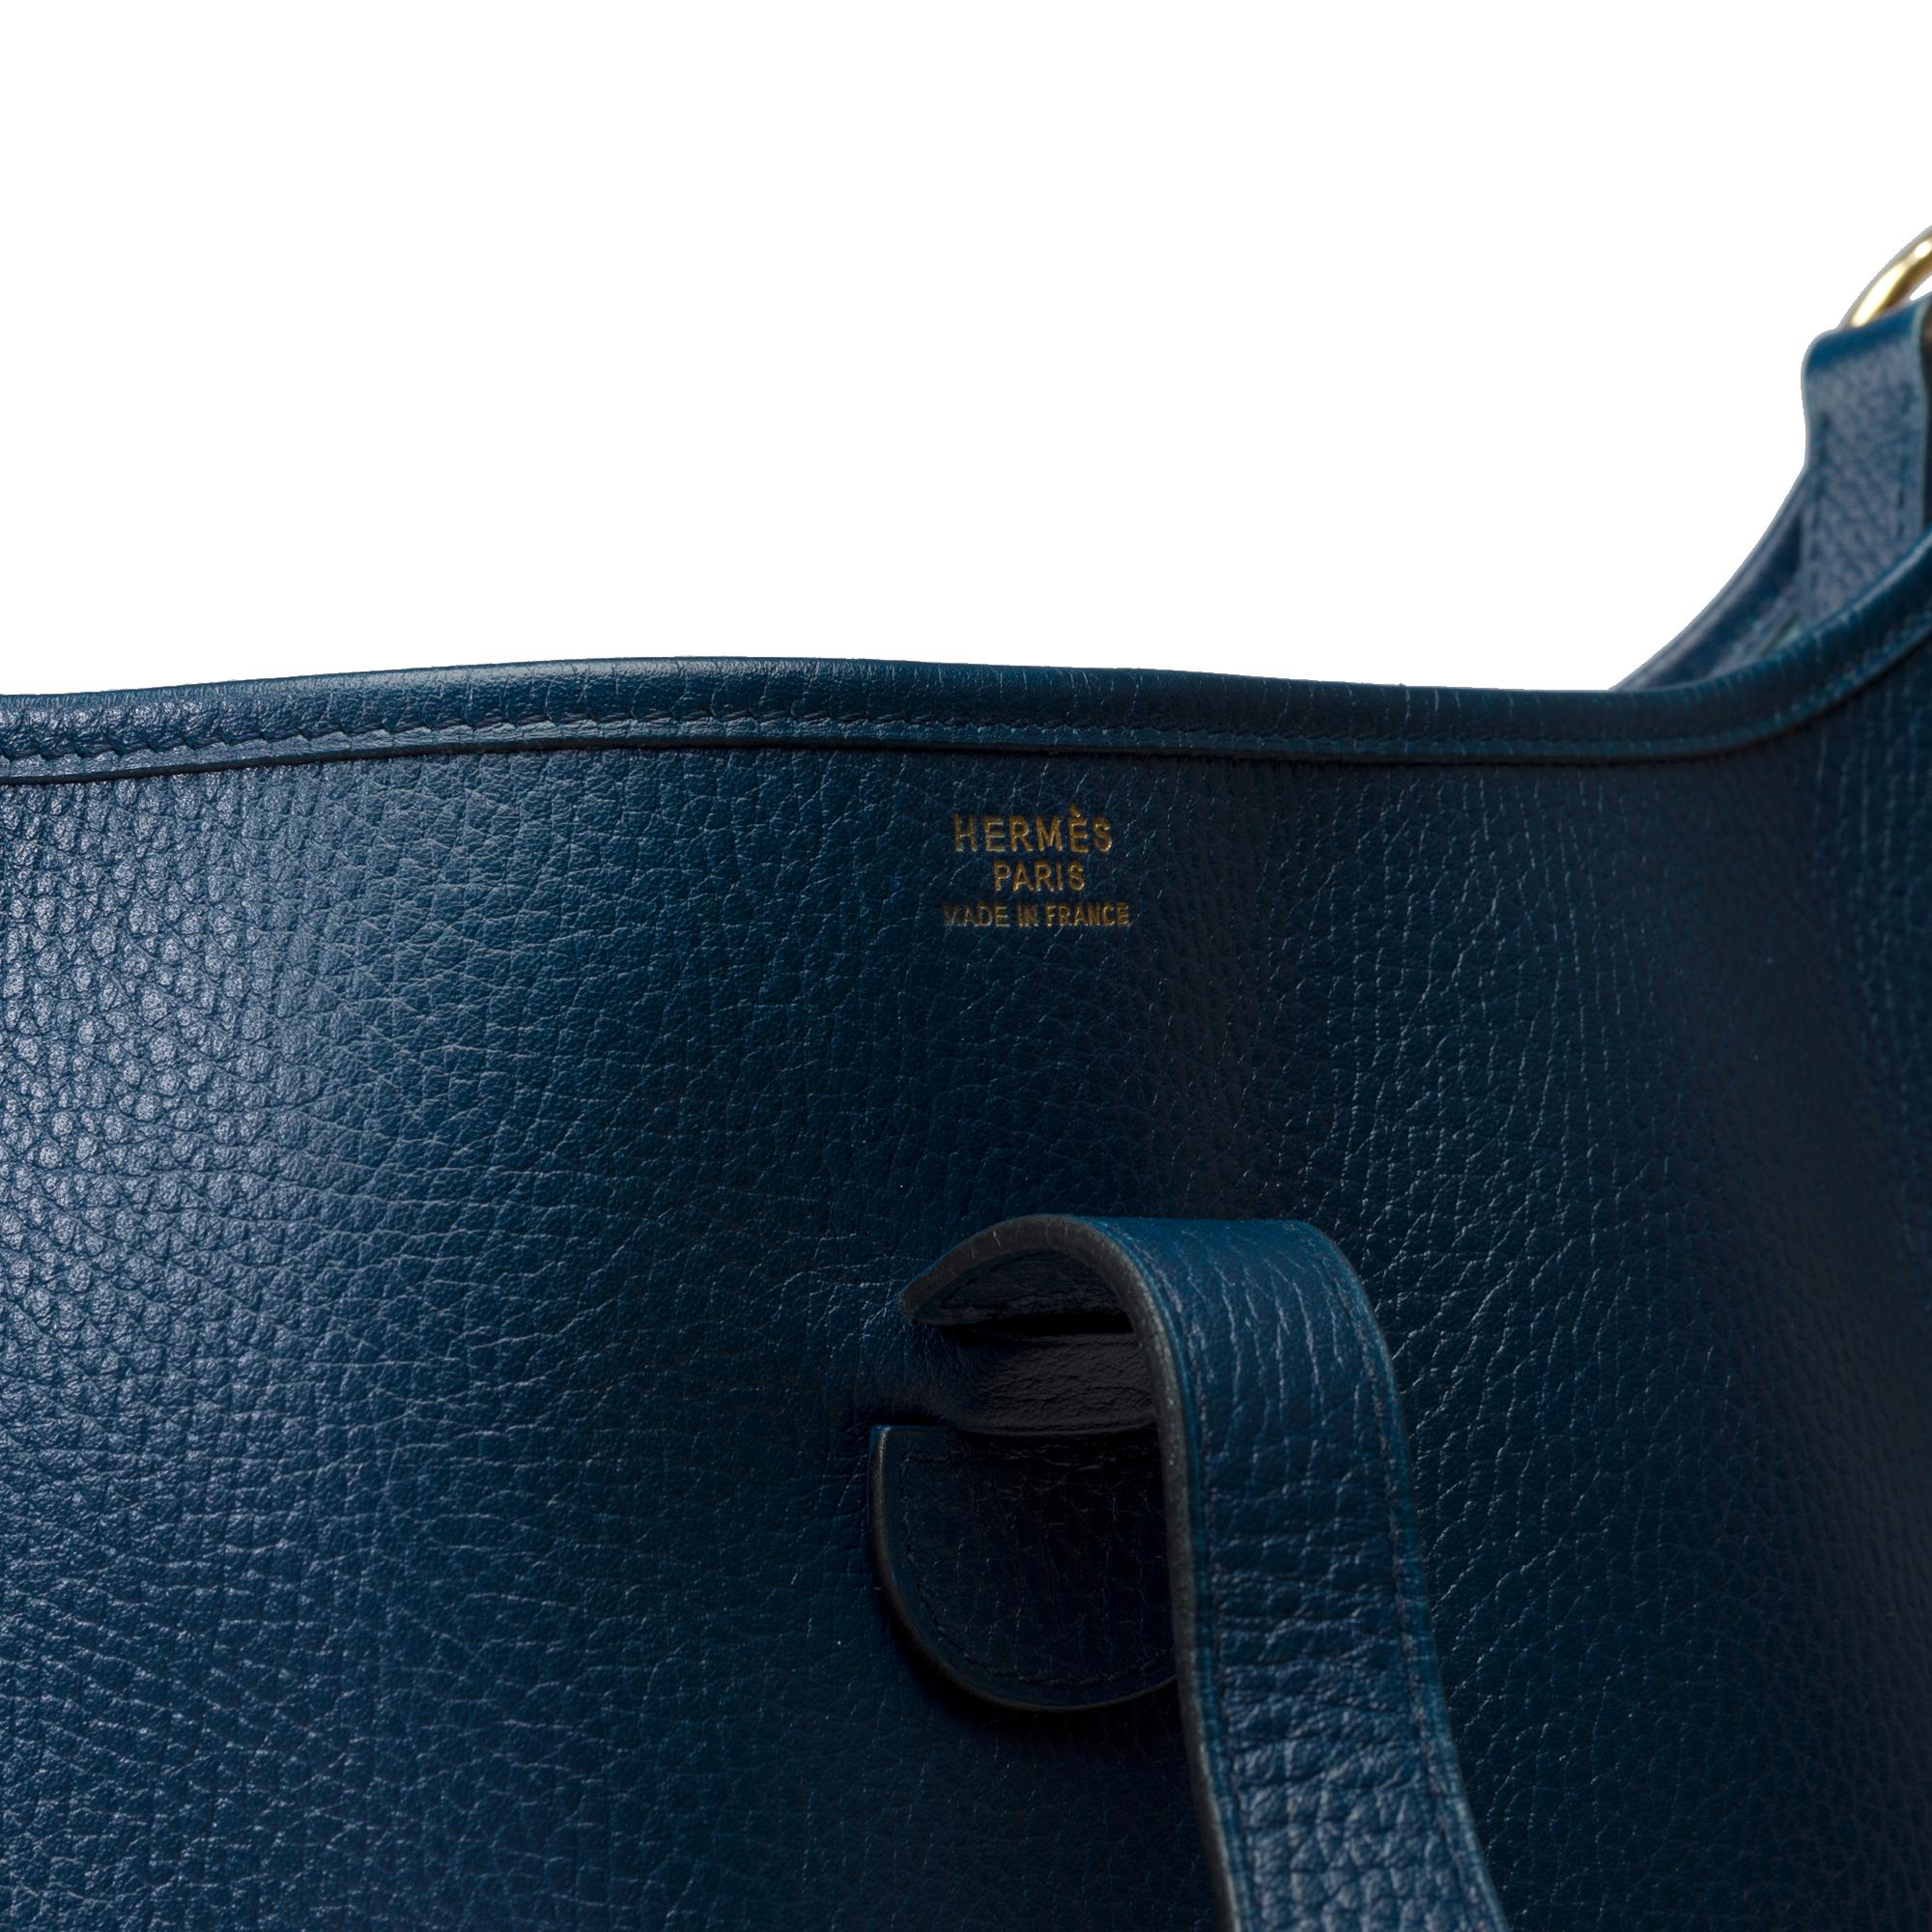 Hermès Evelyne GM  shoulder bag in Navy Blue Taurillon Clemence leather, GHW 4